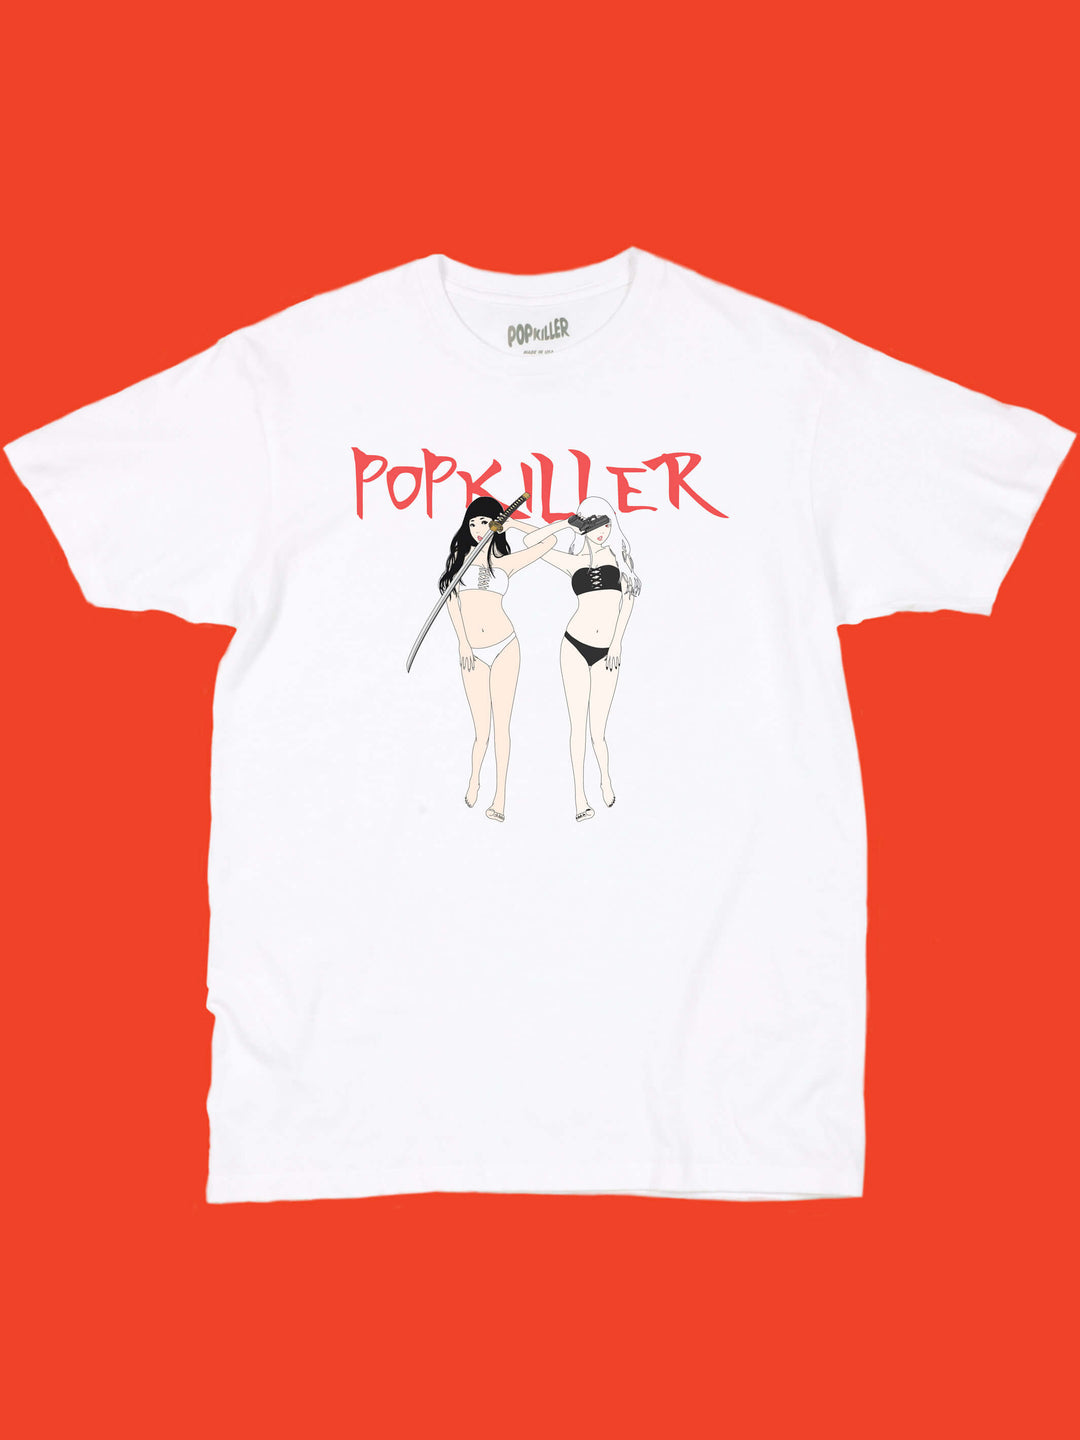 Killer anime girls graphic t-shirt.